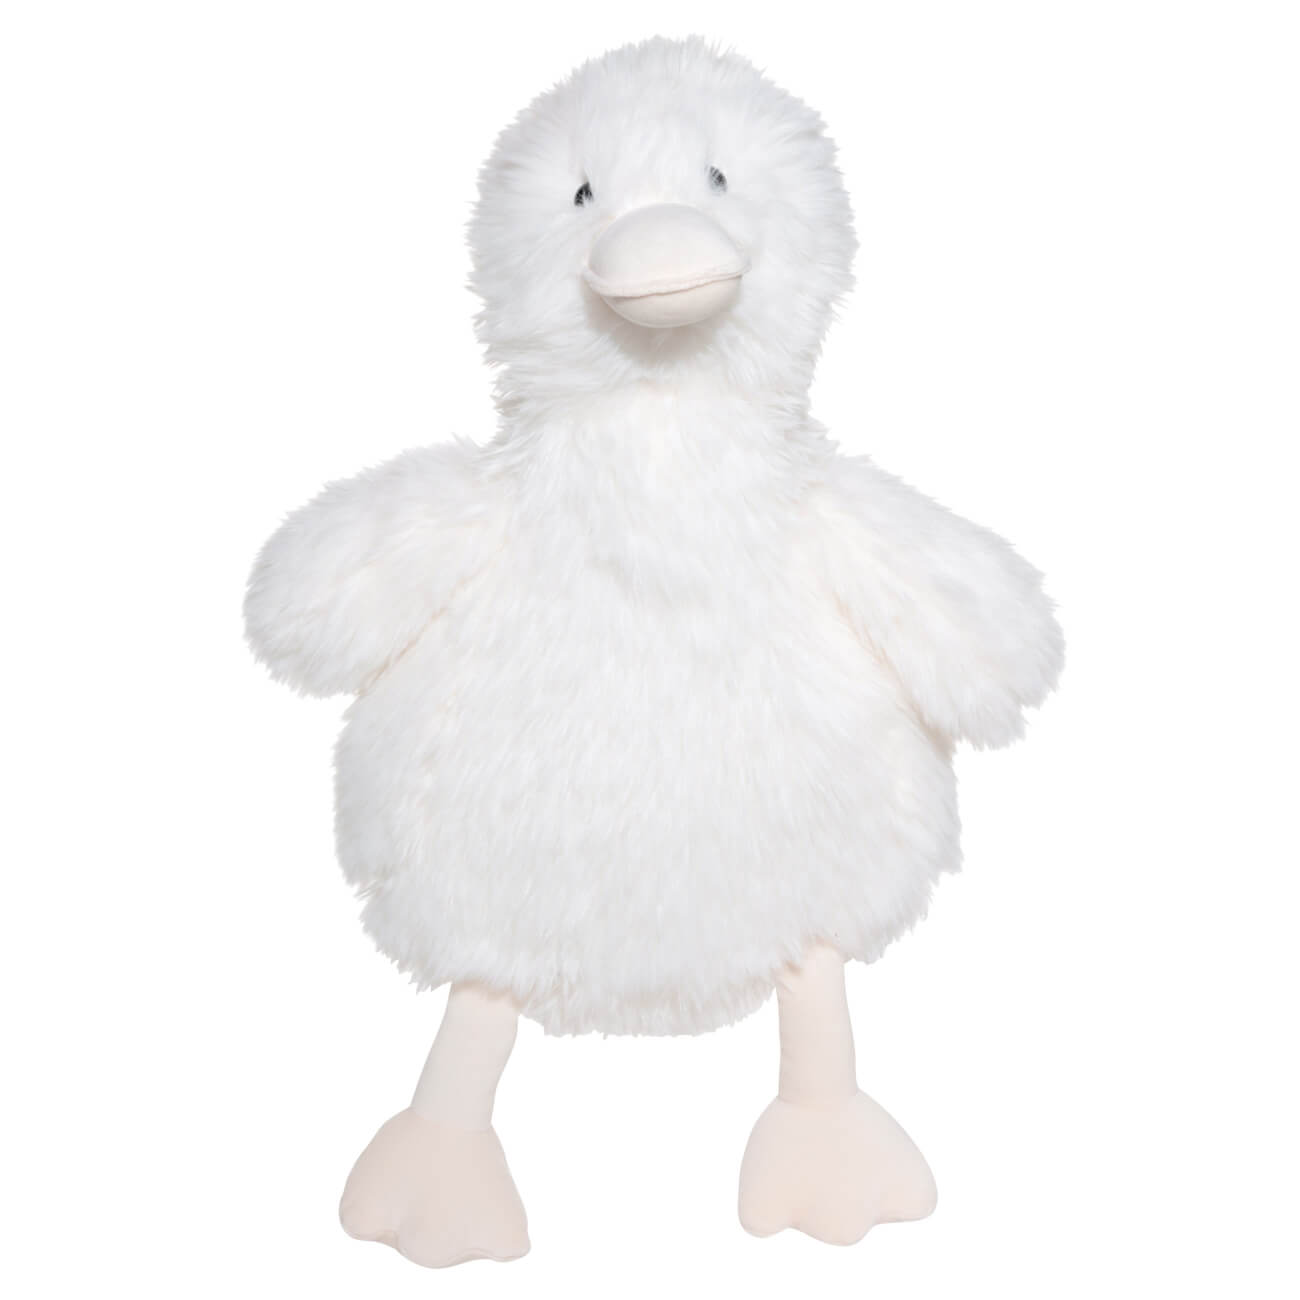 Игрушка, 40 см, мягкая, полиэстер, белая, Гусь, Goose flamingo игрушка для собак овечка мягкая 24см белая